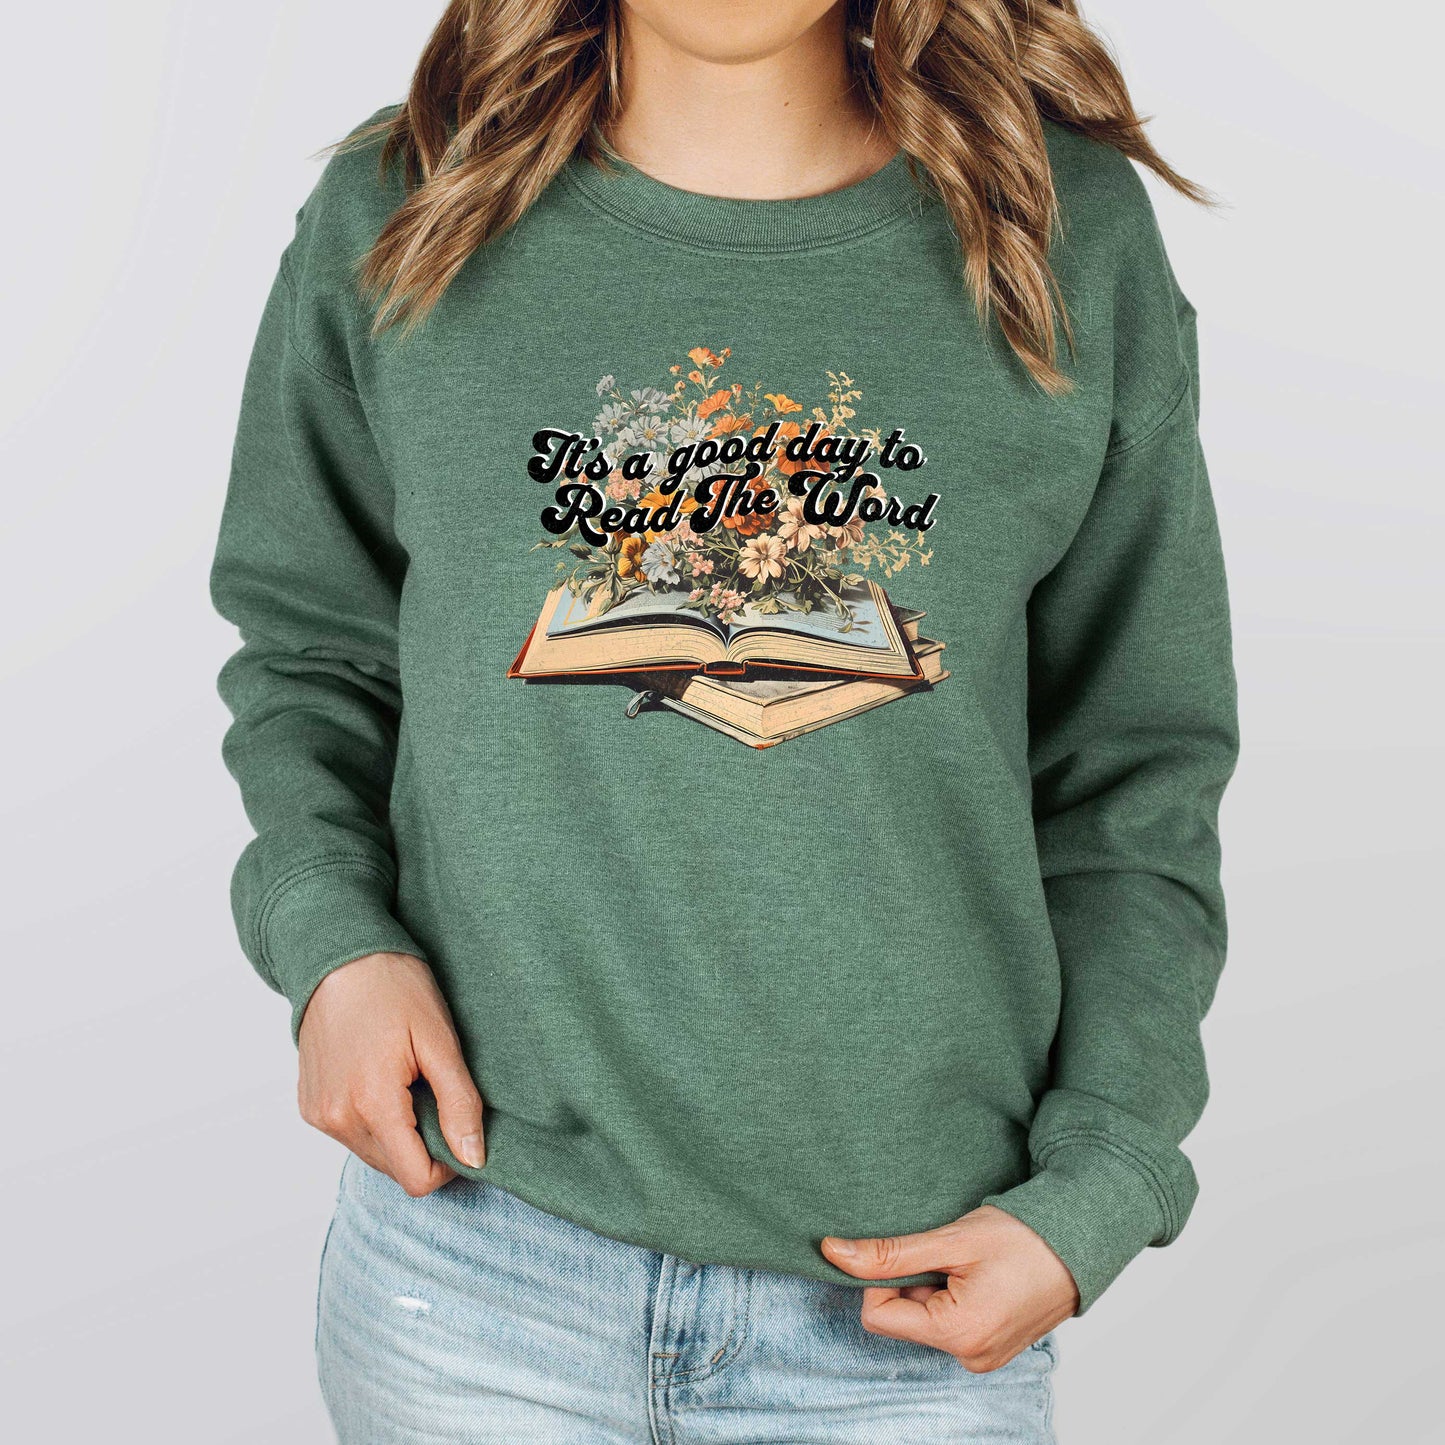 Read The Word | Sweatshirt